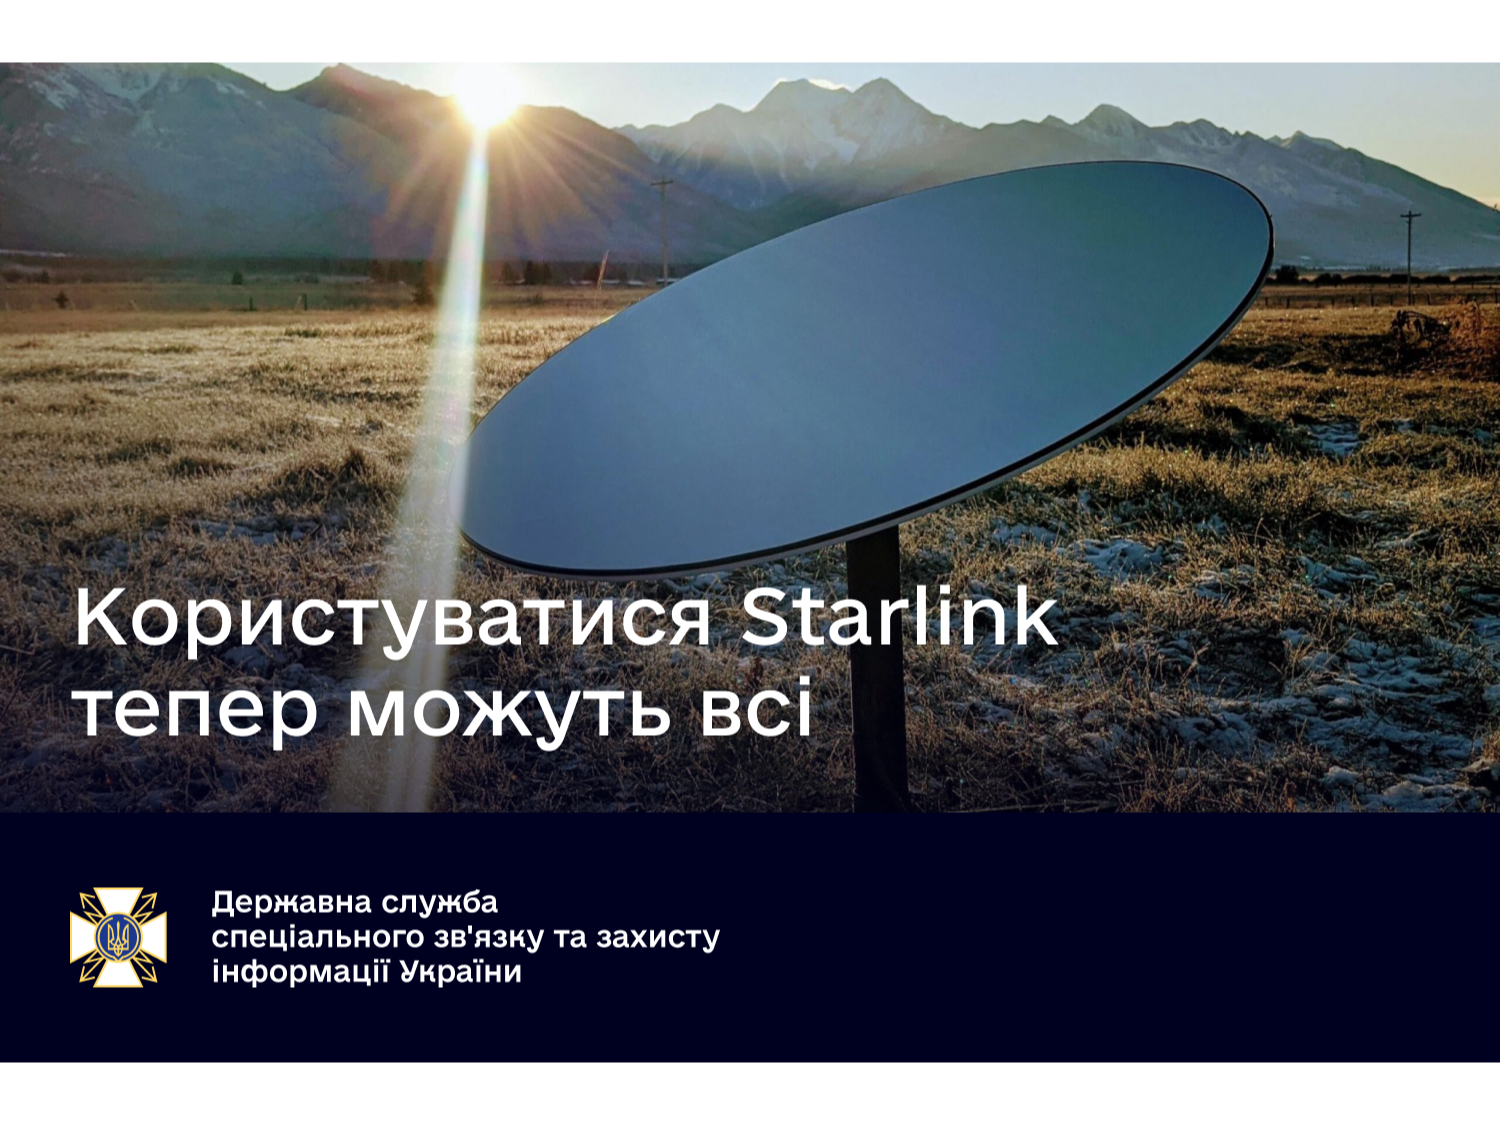 Украинцы теперь могут использовать интернет-спутники компании Илона Маска системы Starlink